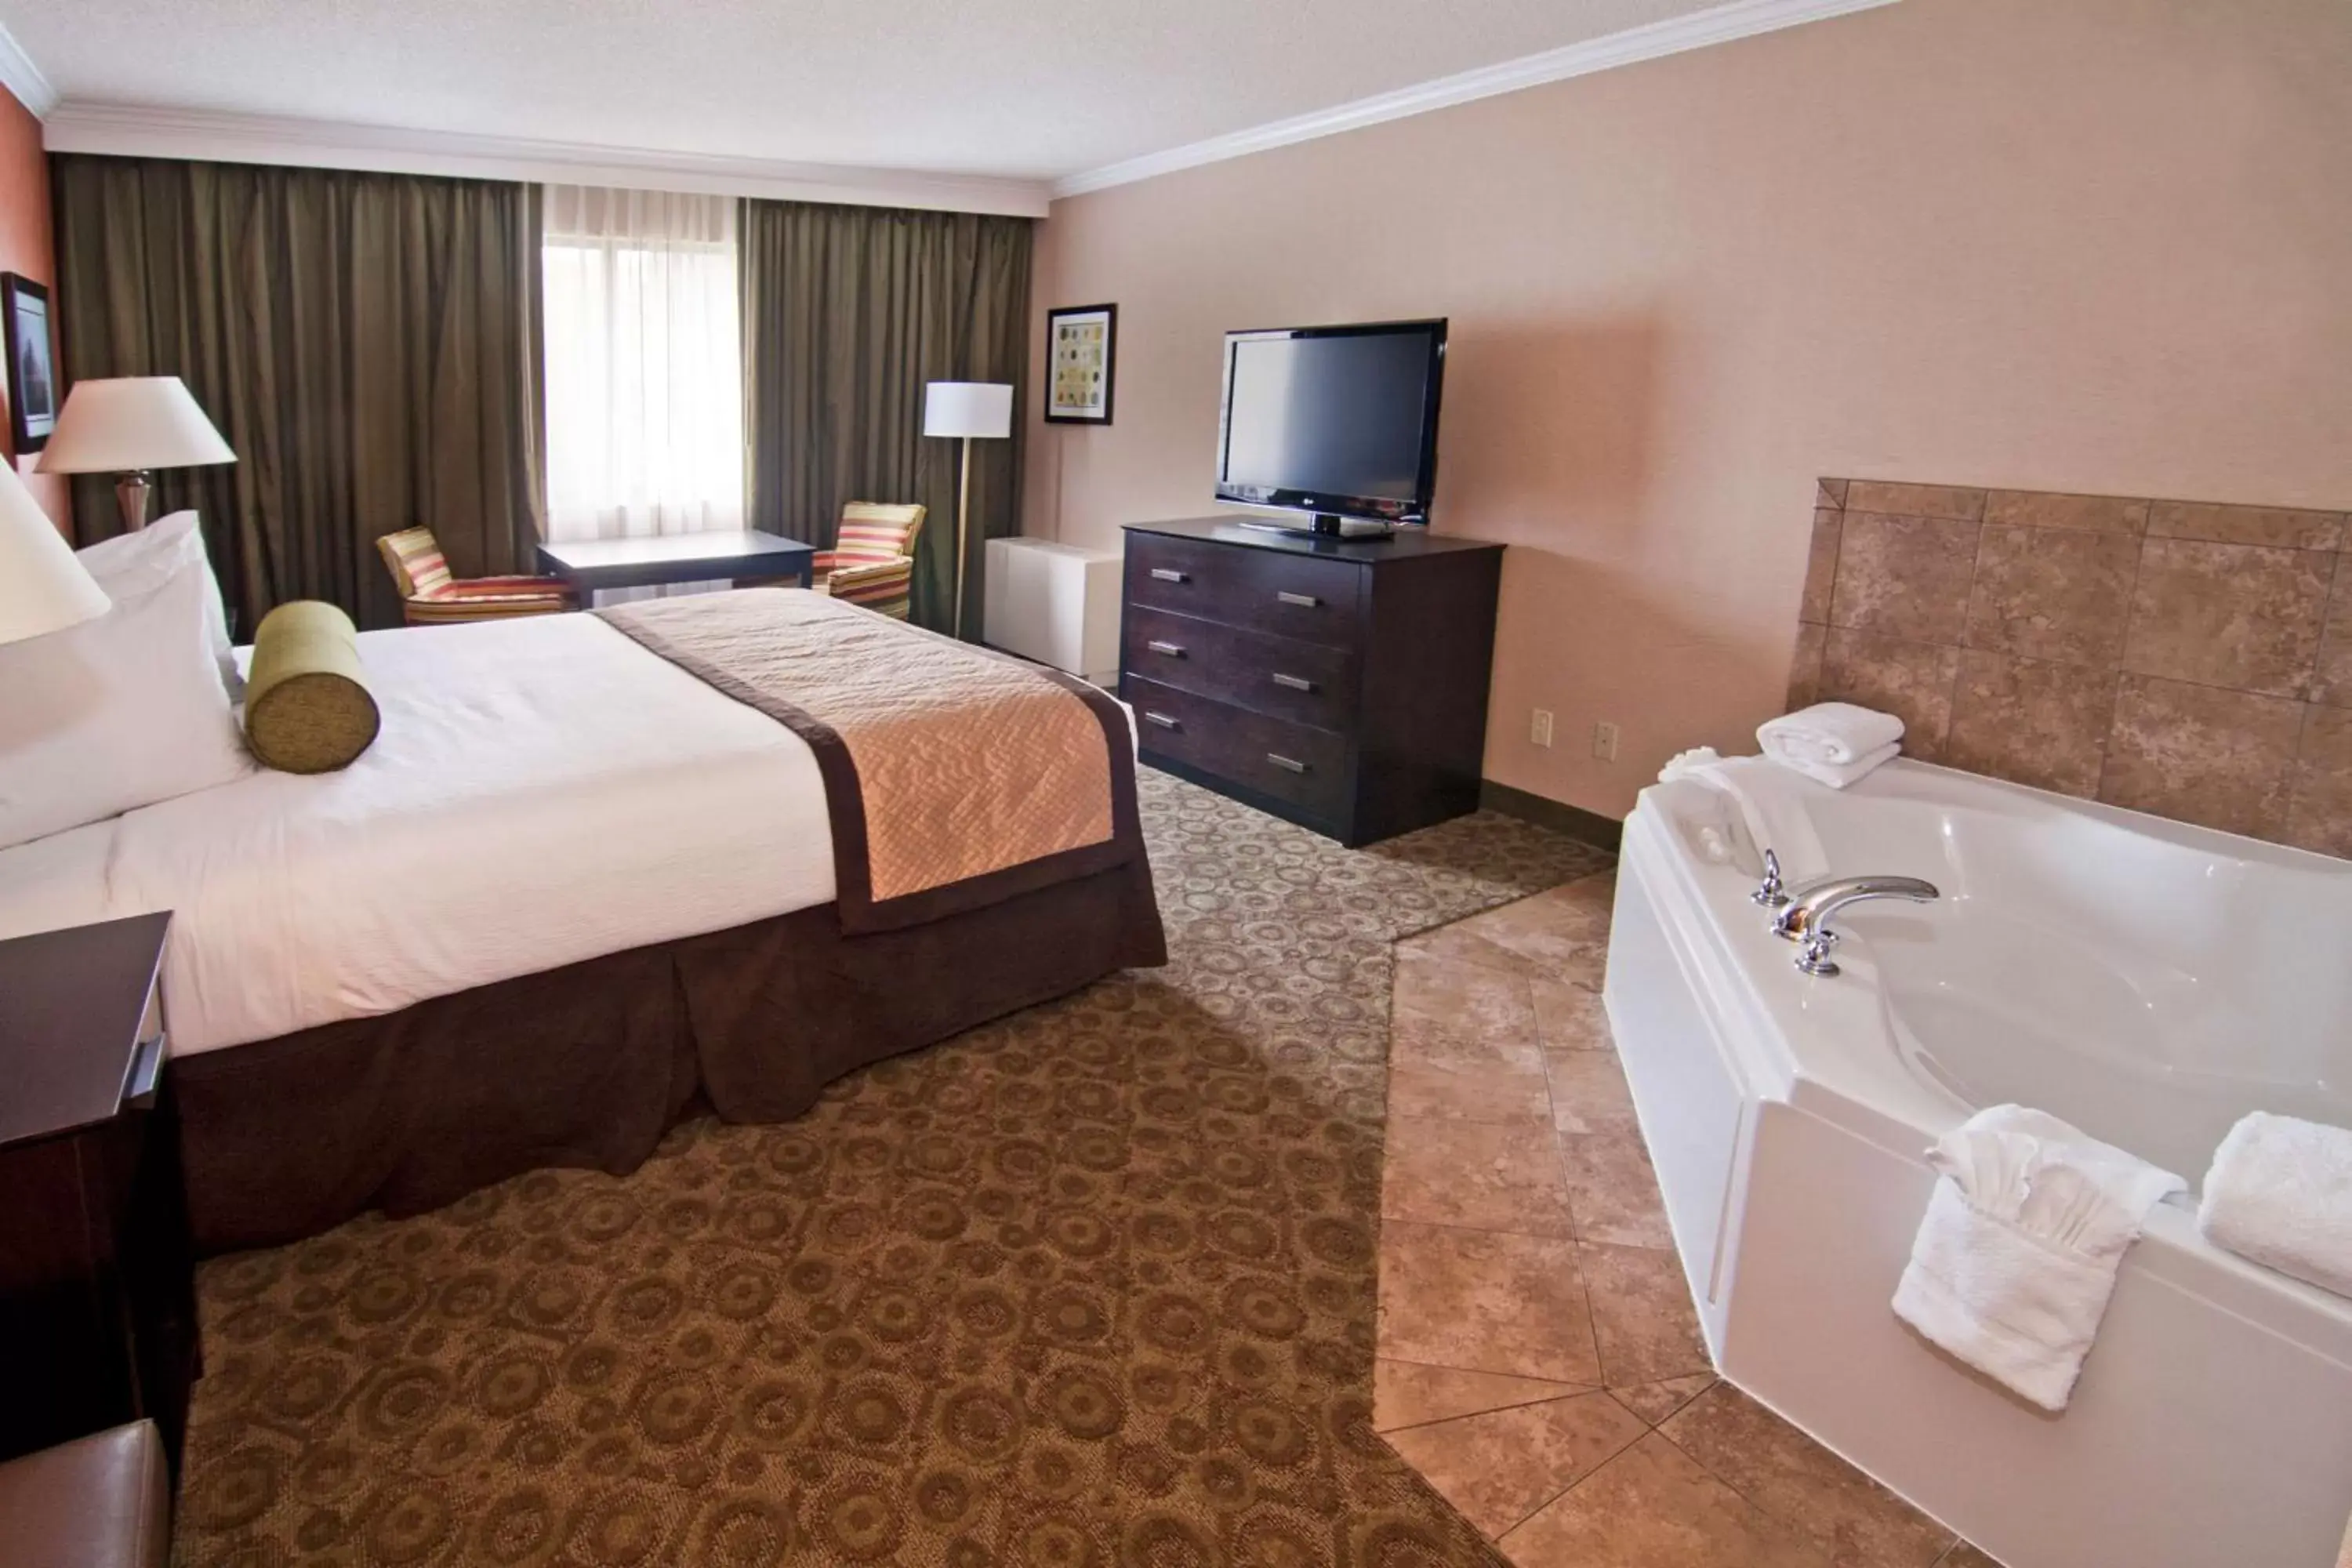 King Room with Spa Bath in Best Western Premier Nicollet Inn